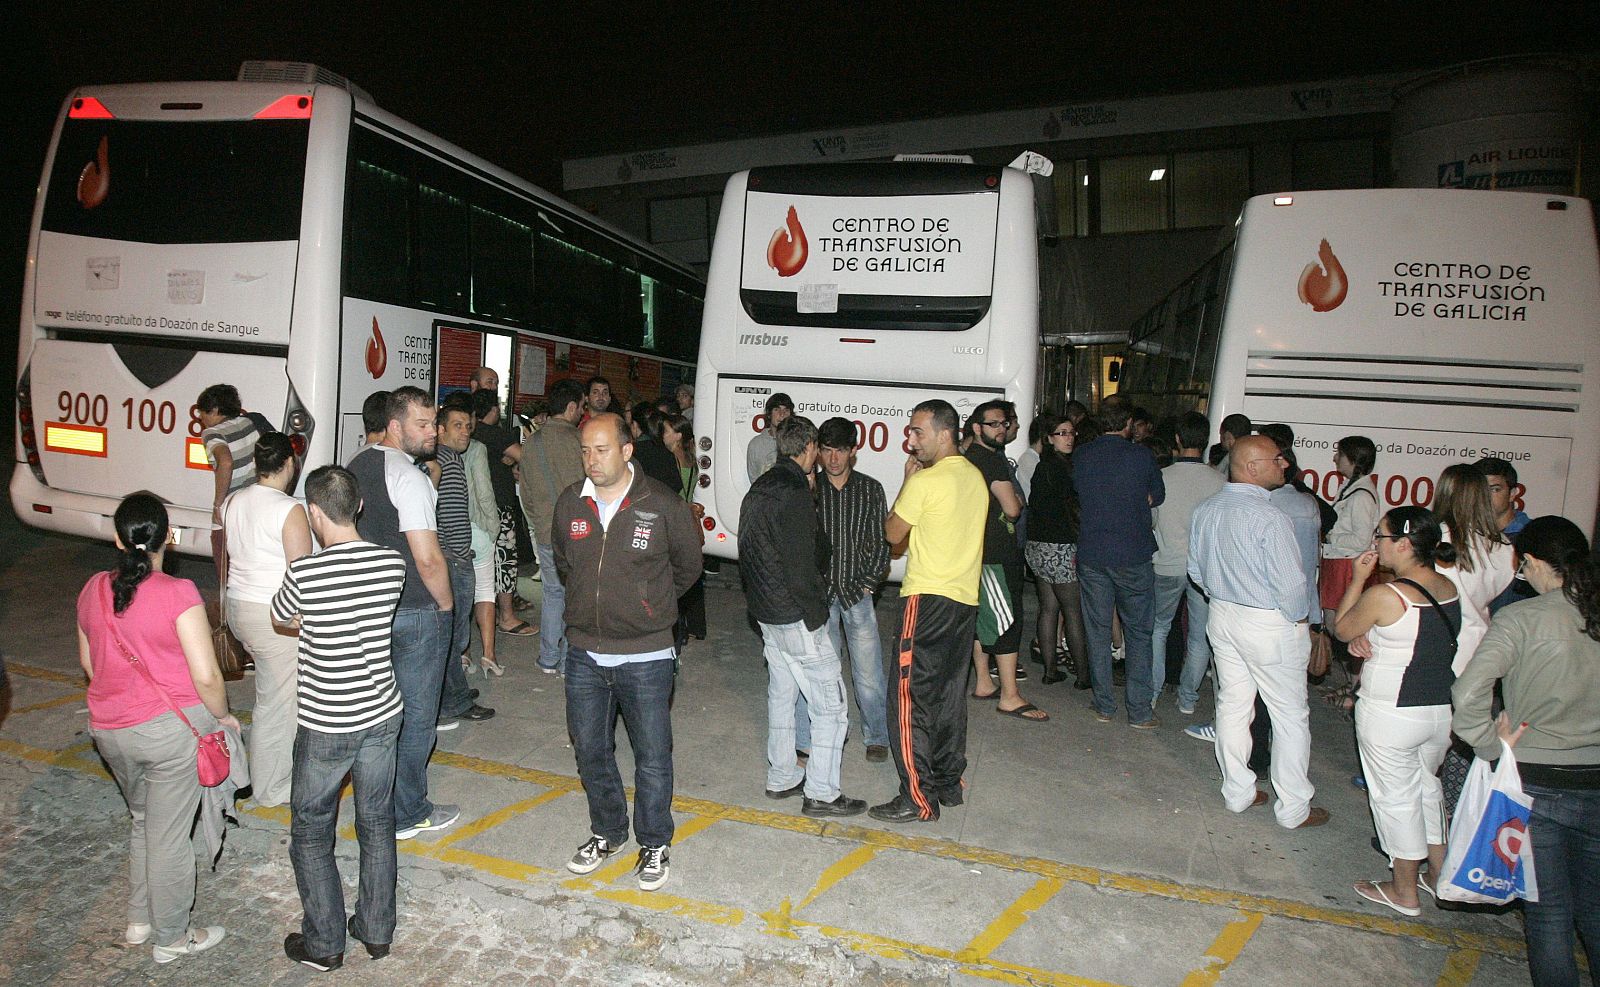 Numerosos ciudadanos han respondido a la petición de donar sangre en el centro de Transfusión de Galicia.